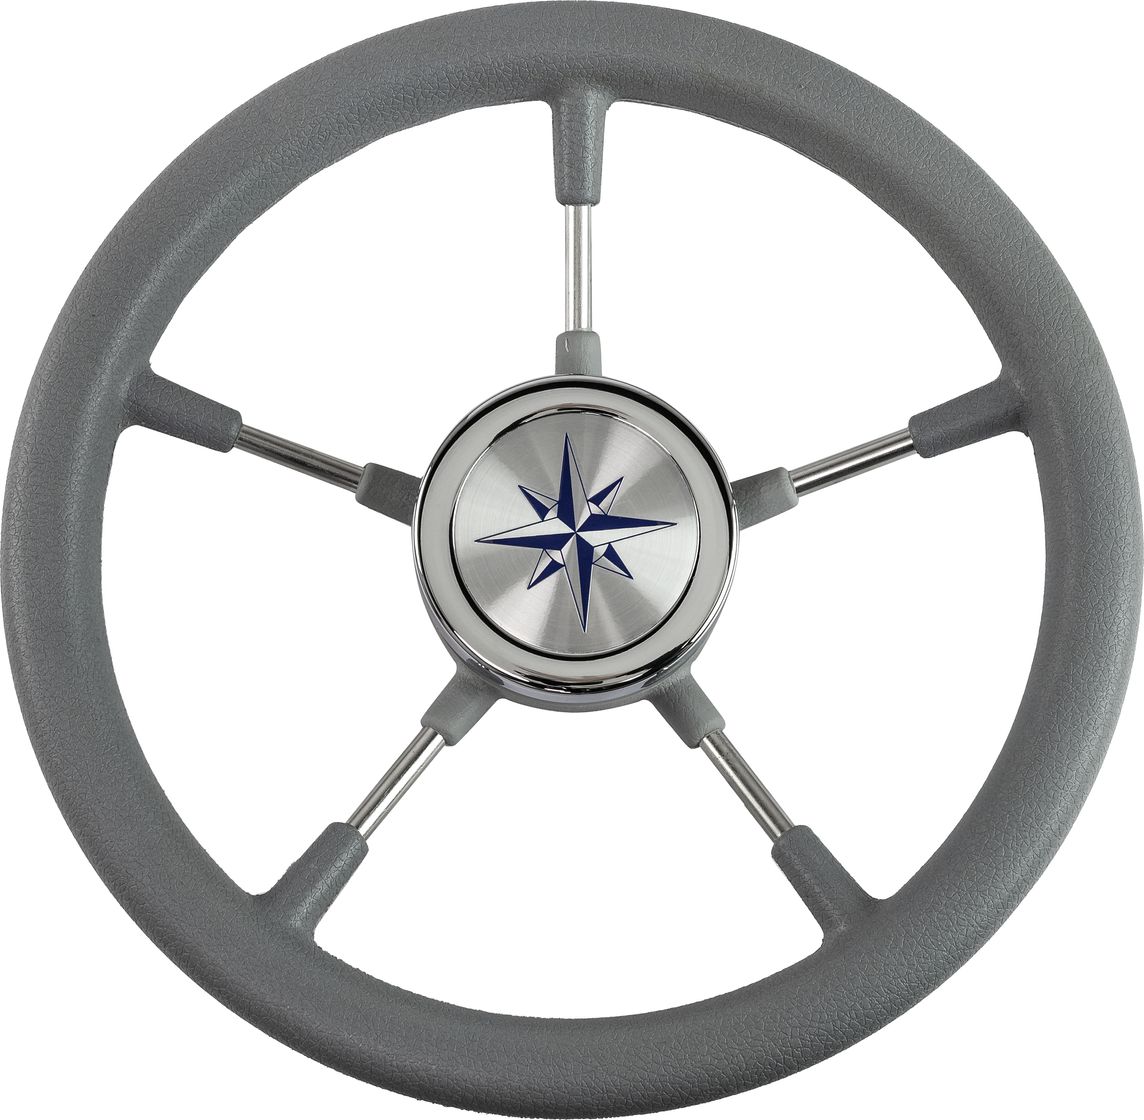 Рулевое колесо RIVA RSL обод серый, спицы серебряные д. 320 мм VN732022-03 сумка для ноутбука hama 13 3 perth серый полиуретан 00196605 упак 1шт